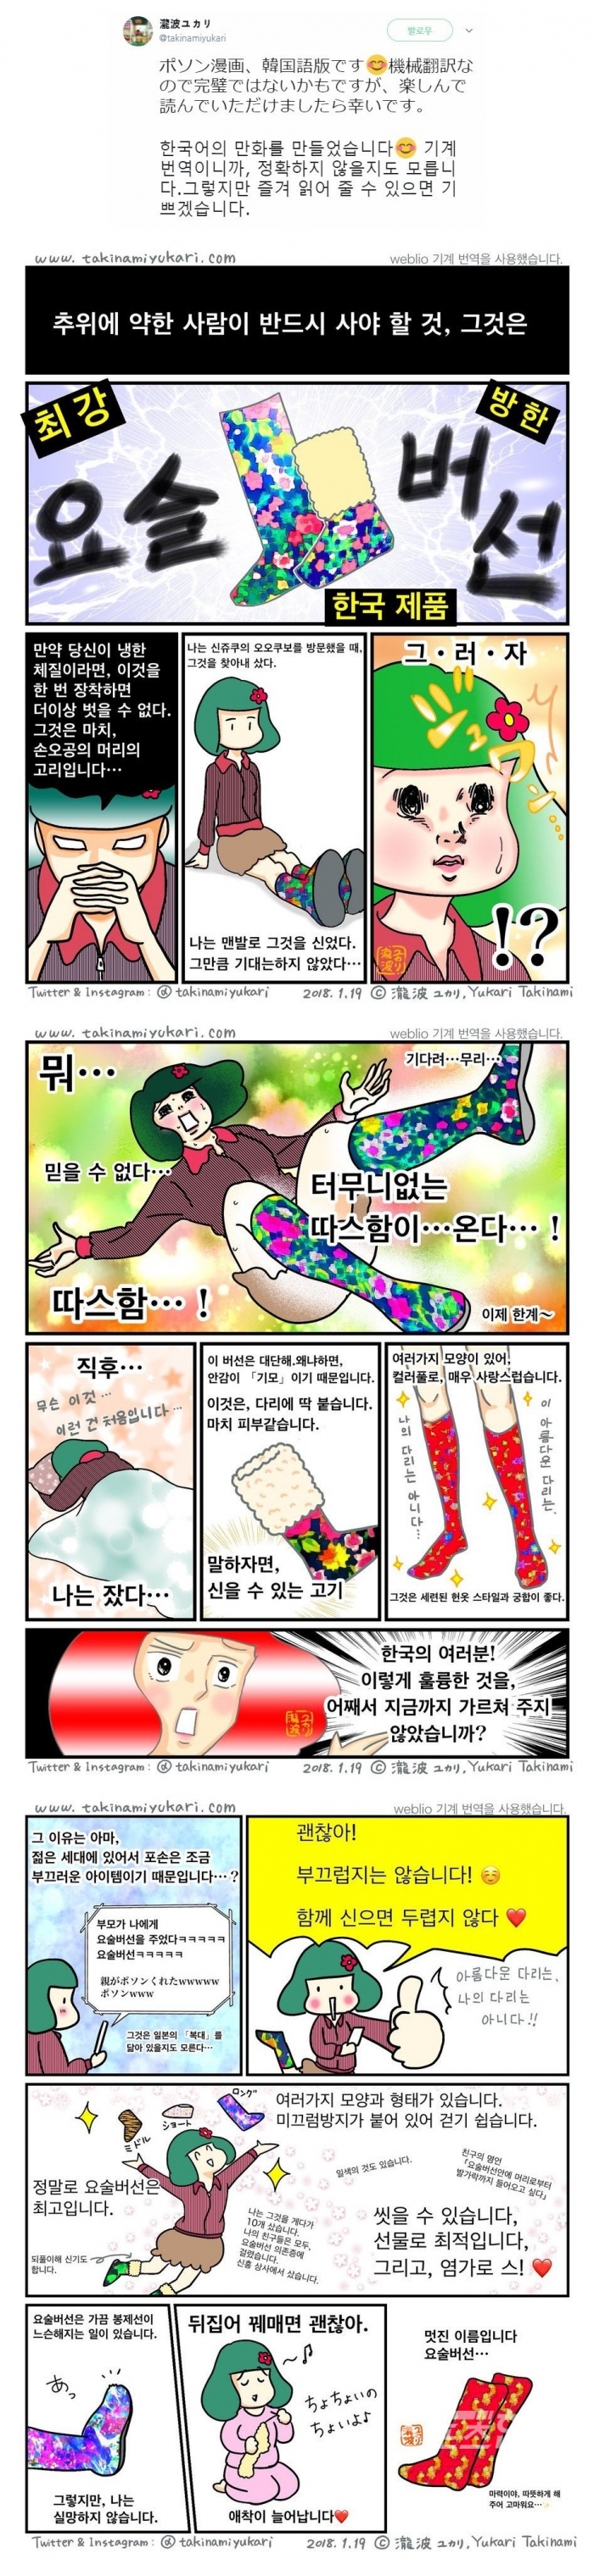 한국 재래시장에서 일본 관광객에 인기리에 판매되는 요술버선을 일본인 만화작가가 한국어로 만들어 트위터에 올린 만화이다. <사진=瀧波ユカリ(Takinami Yukar) 작가i 트위터 캡쳐>